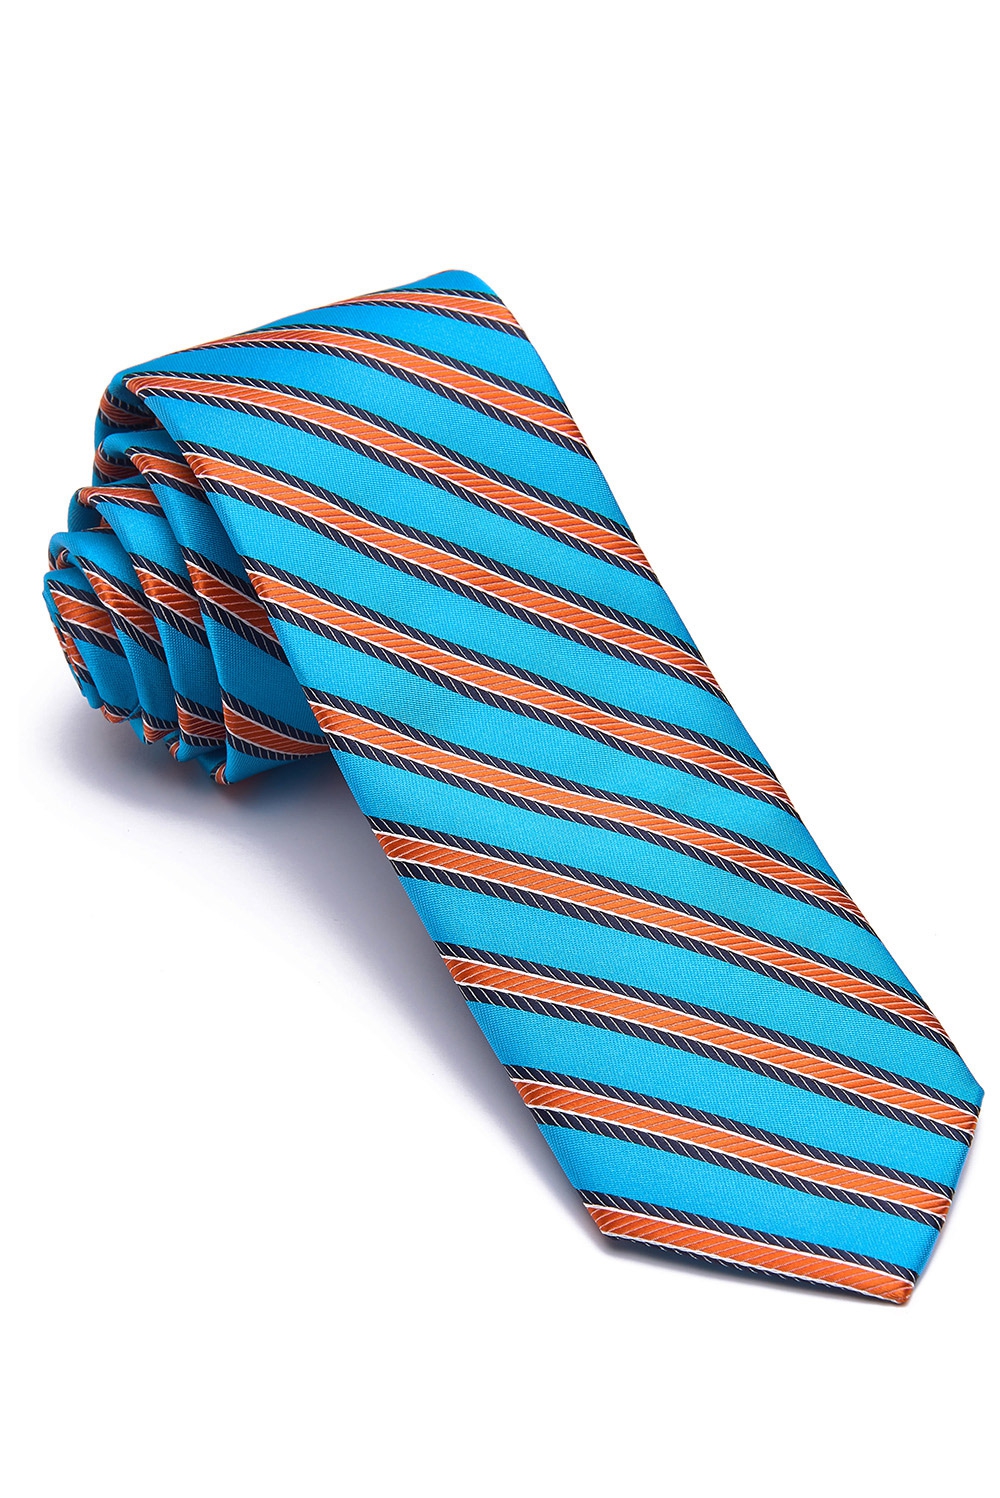 Cravata poliester albastra cu dungi 0